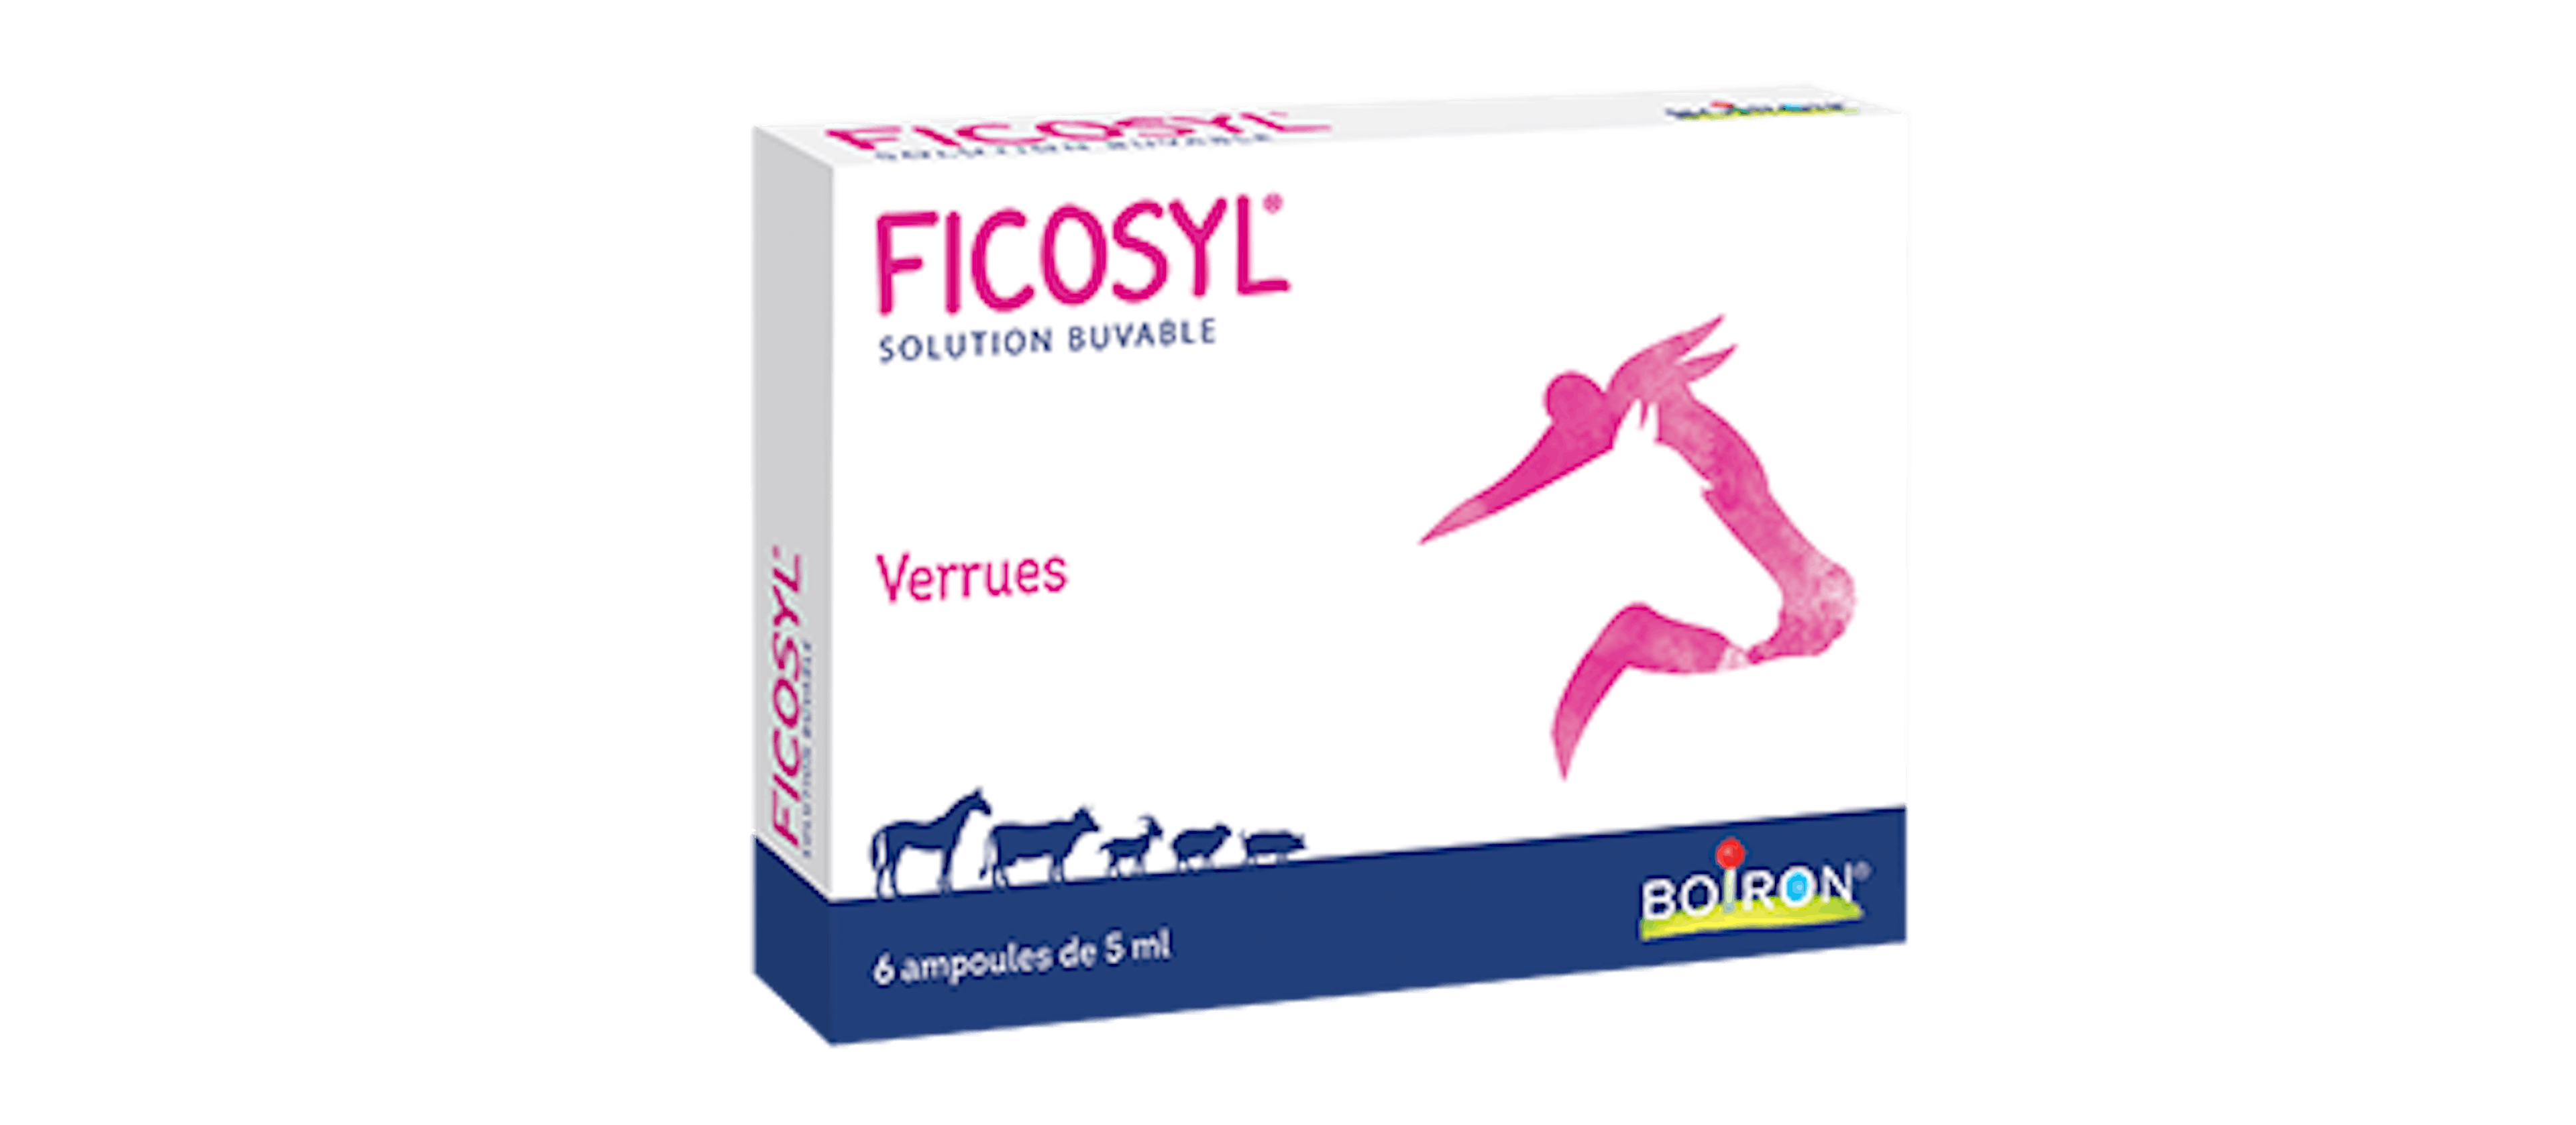 Ficosyl Boiron